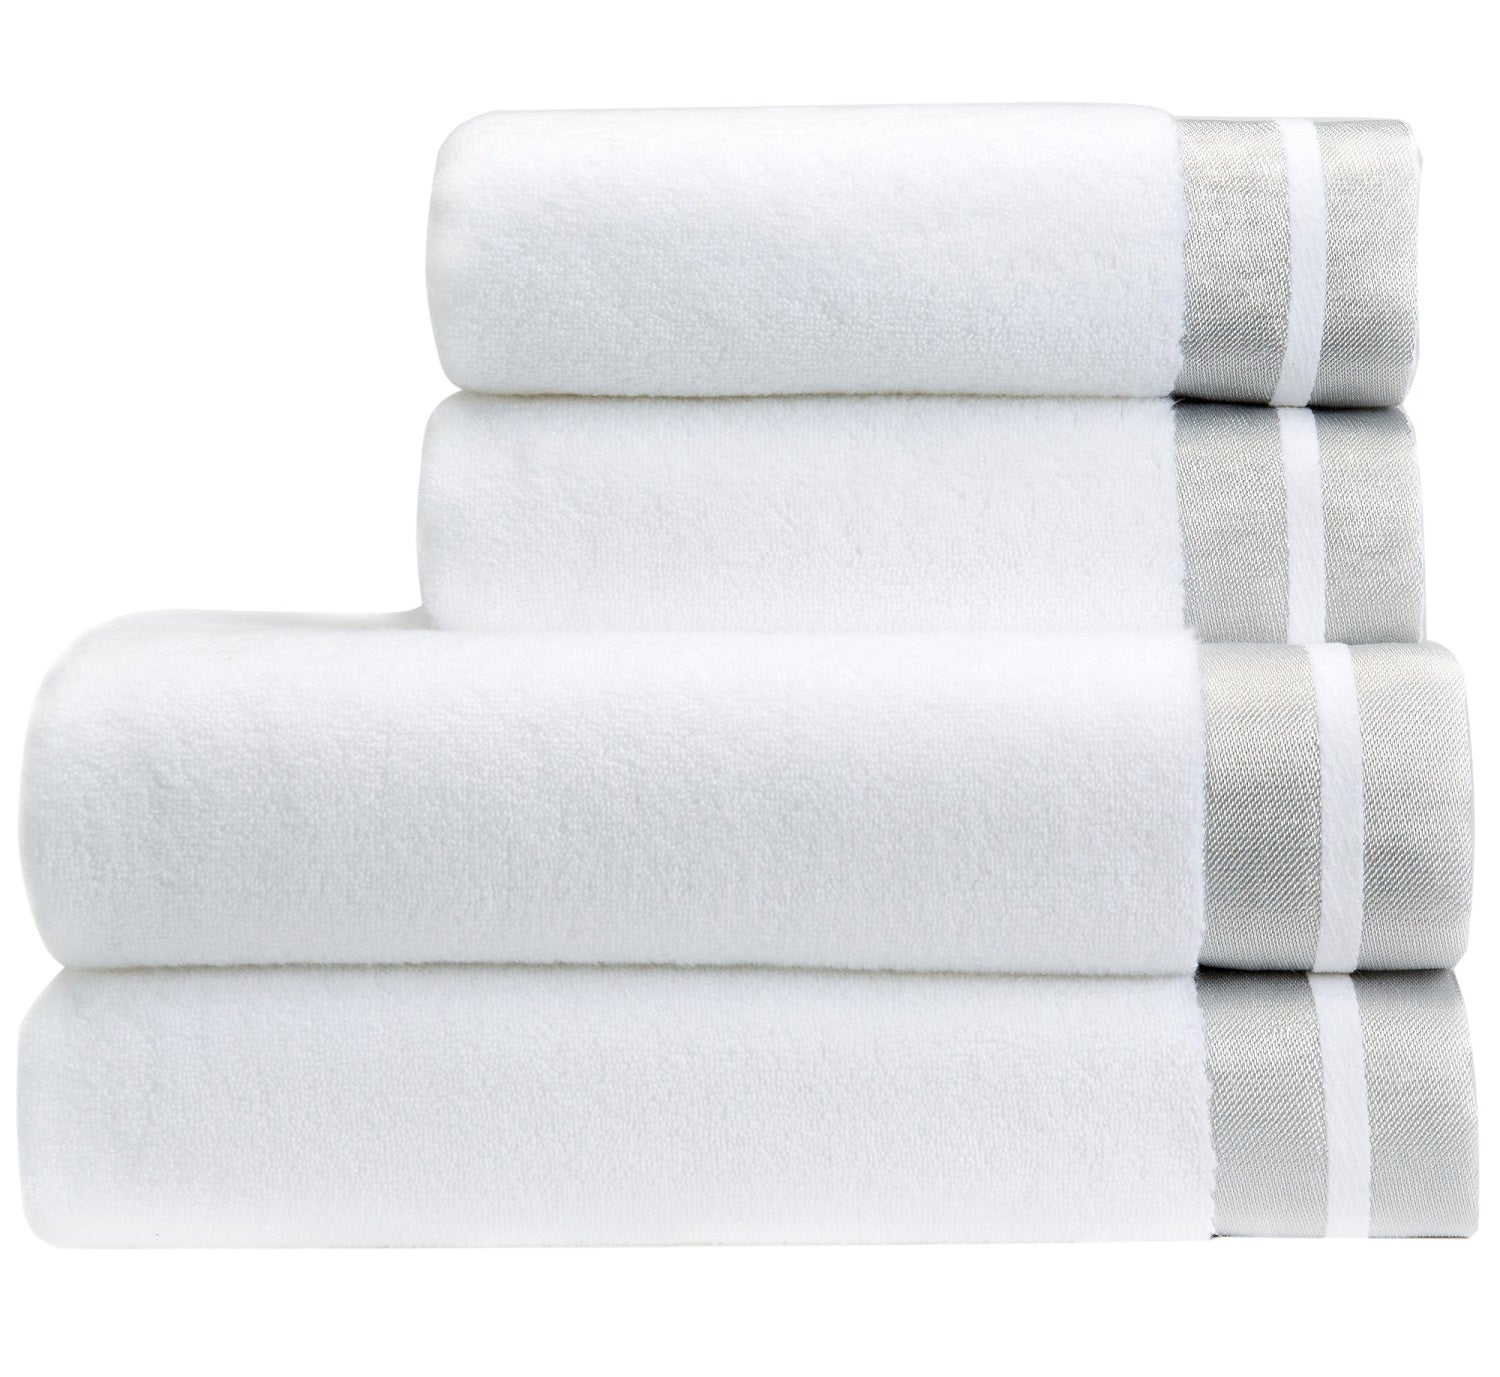 Christy Mode Hand Towel Designer Silver End Super Soft